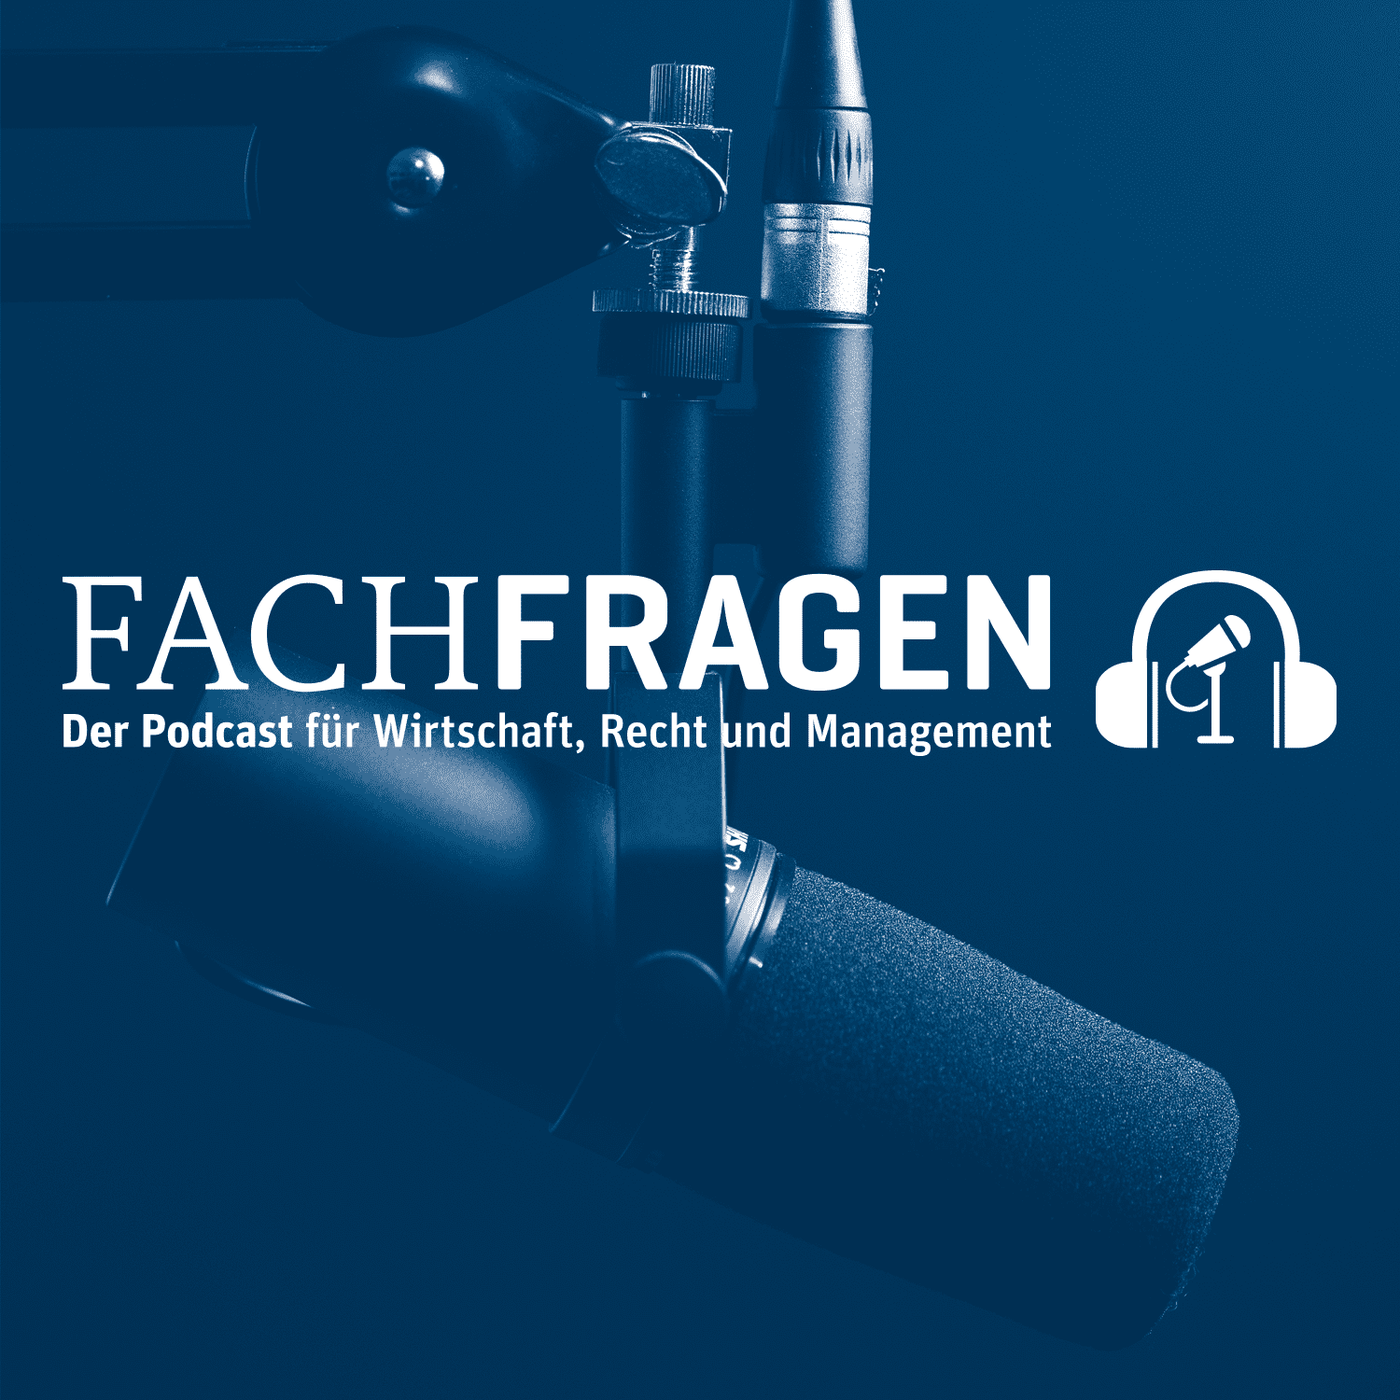 FACHFRAGEN: Der Podcast für Wirtschaft, Recht und Management